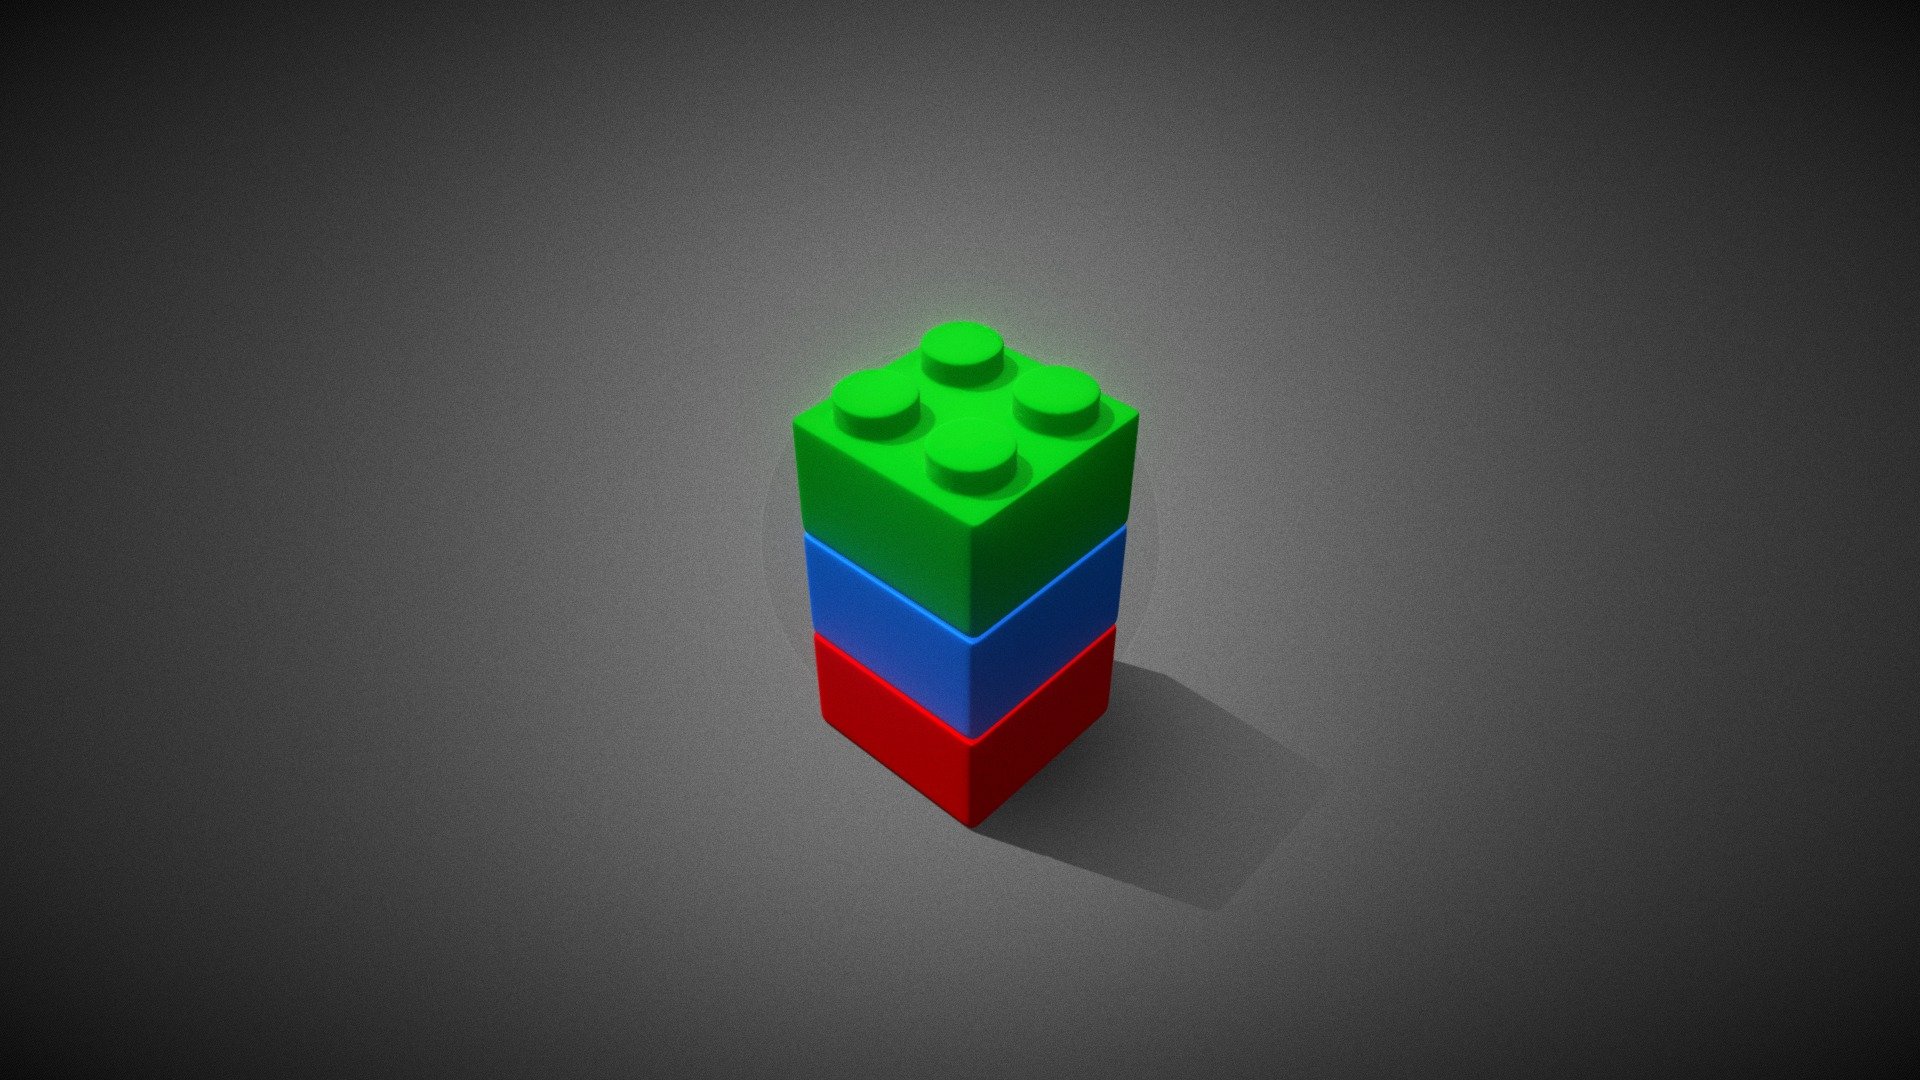 RGB lego cubes